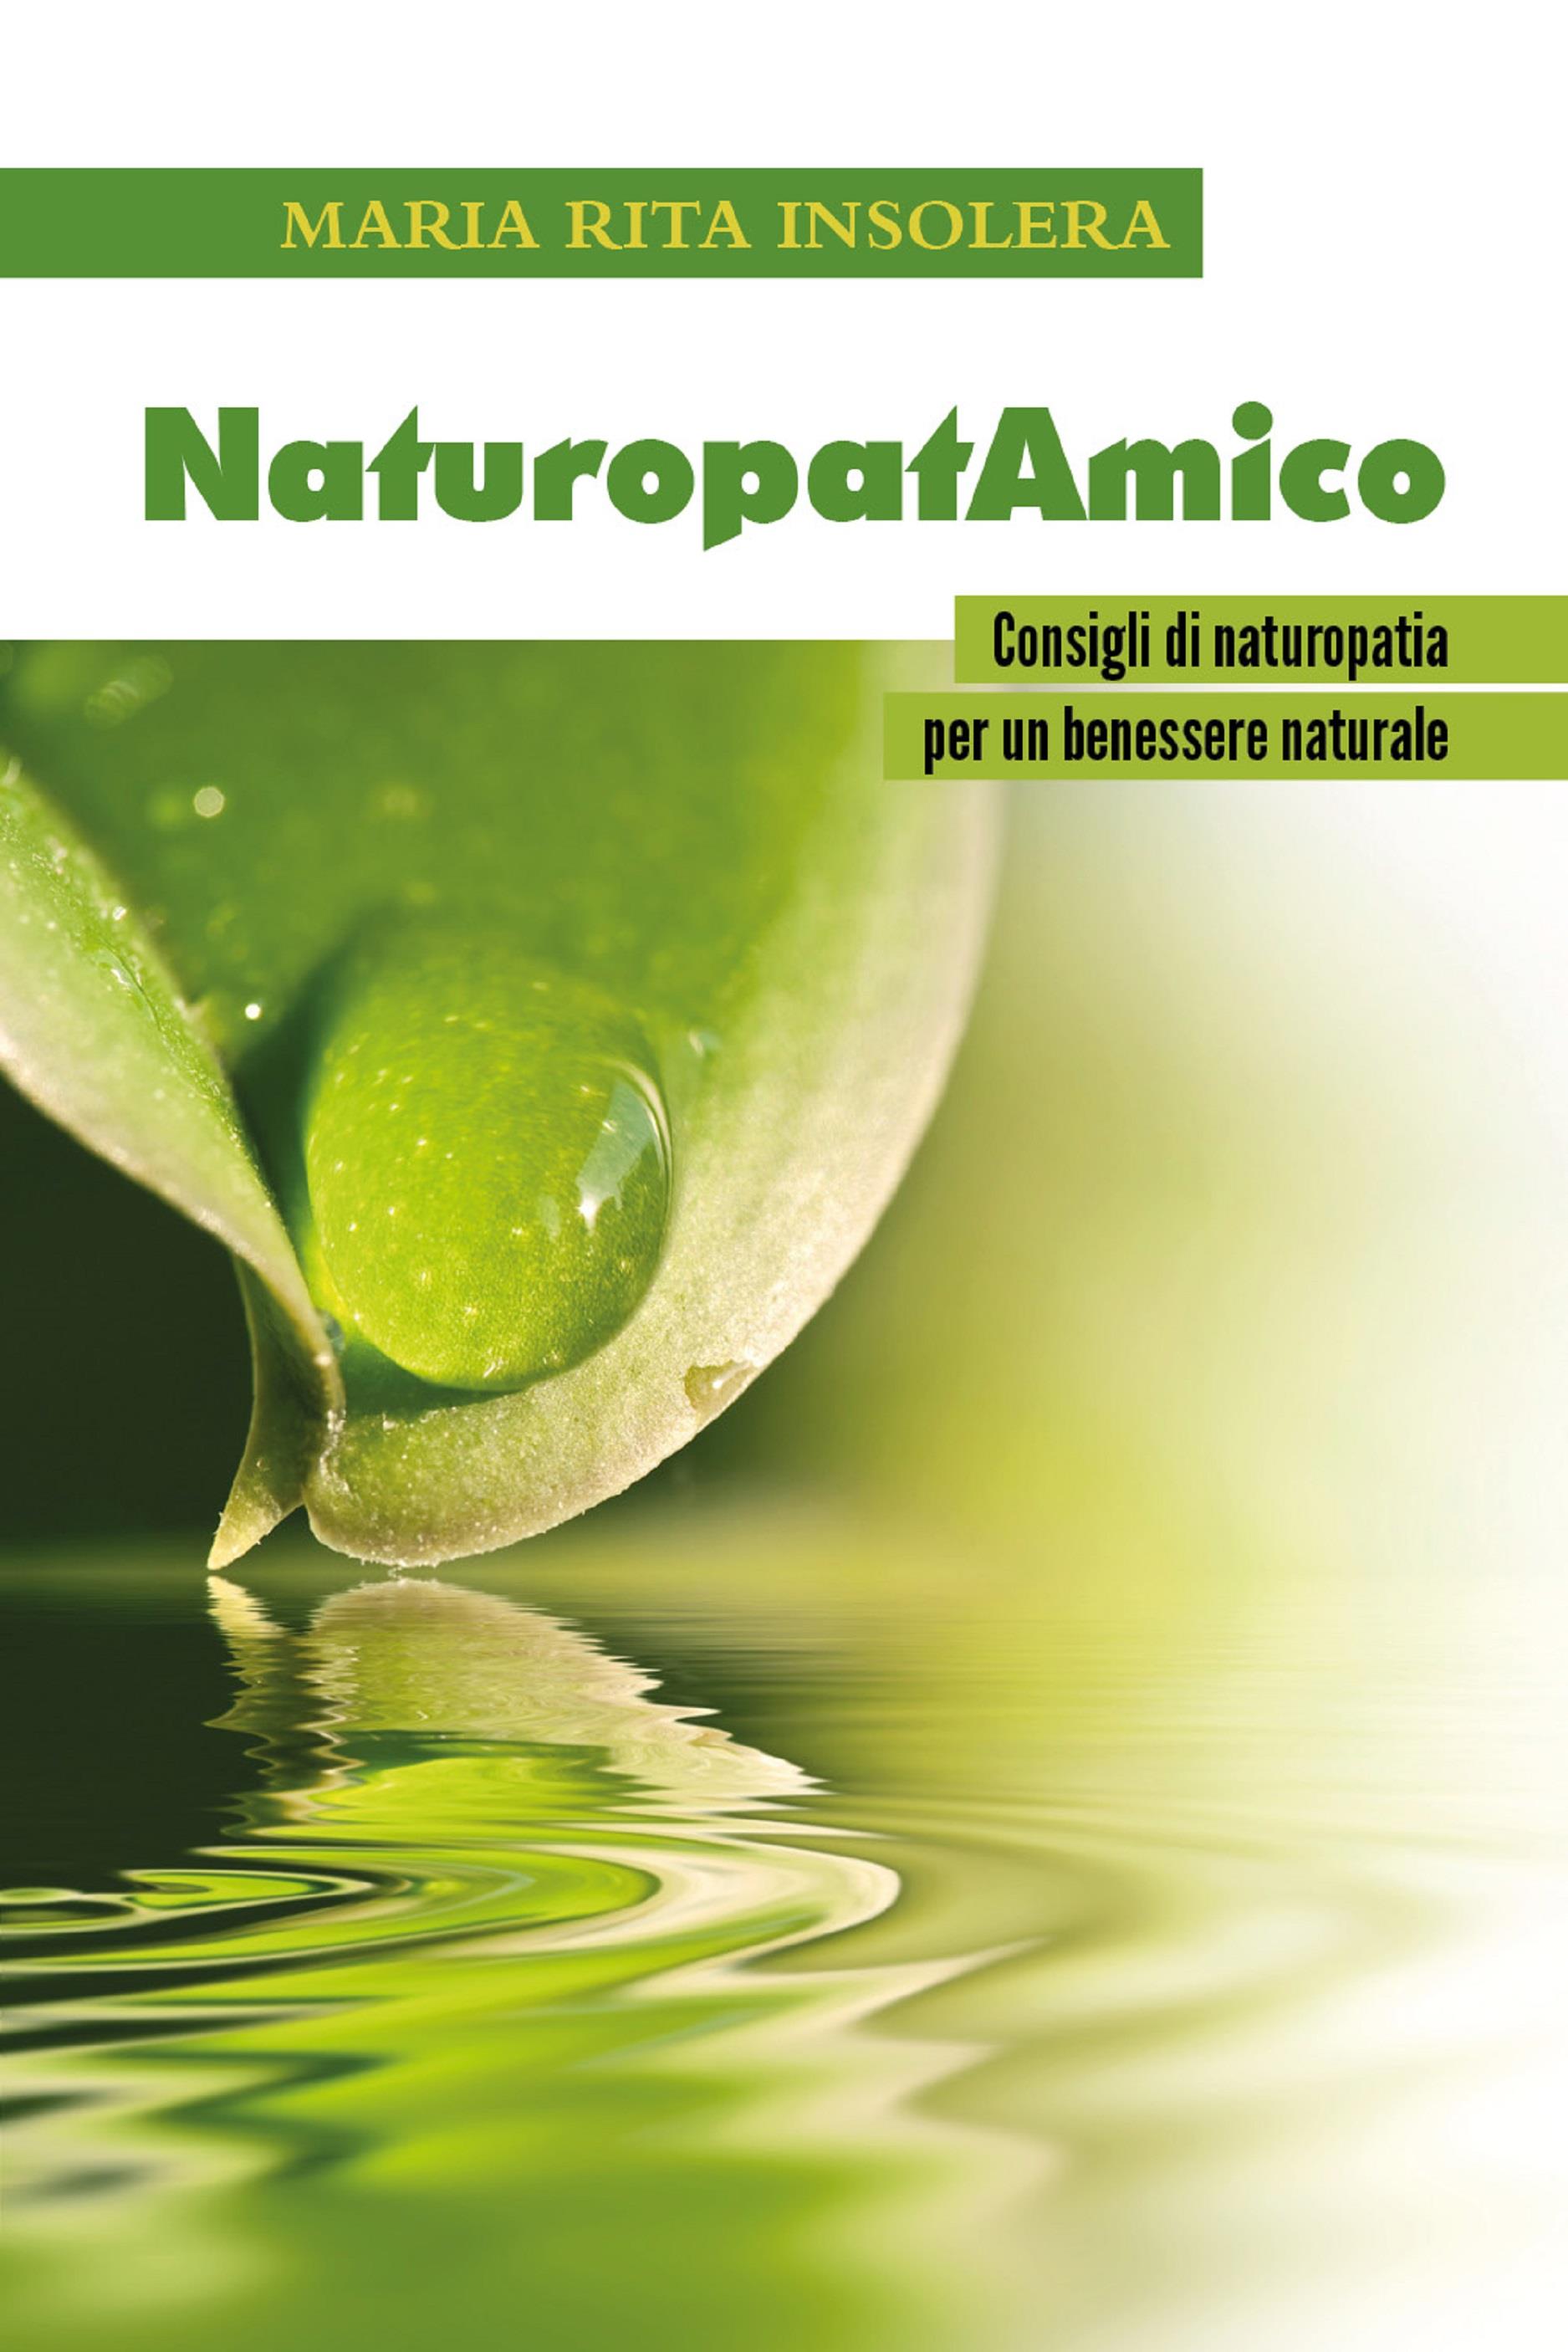 NaturopatAmico - Consigli di naturopatia per un benessere naturale